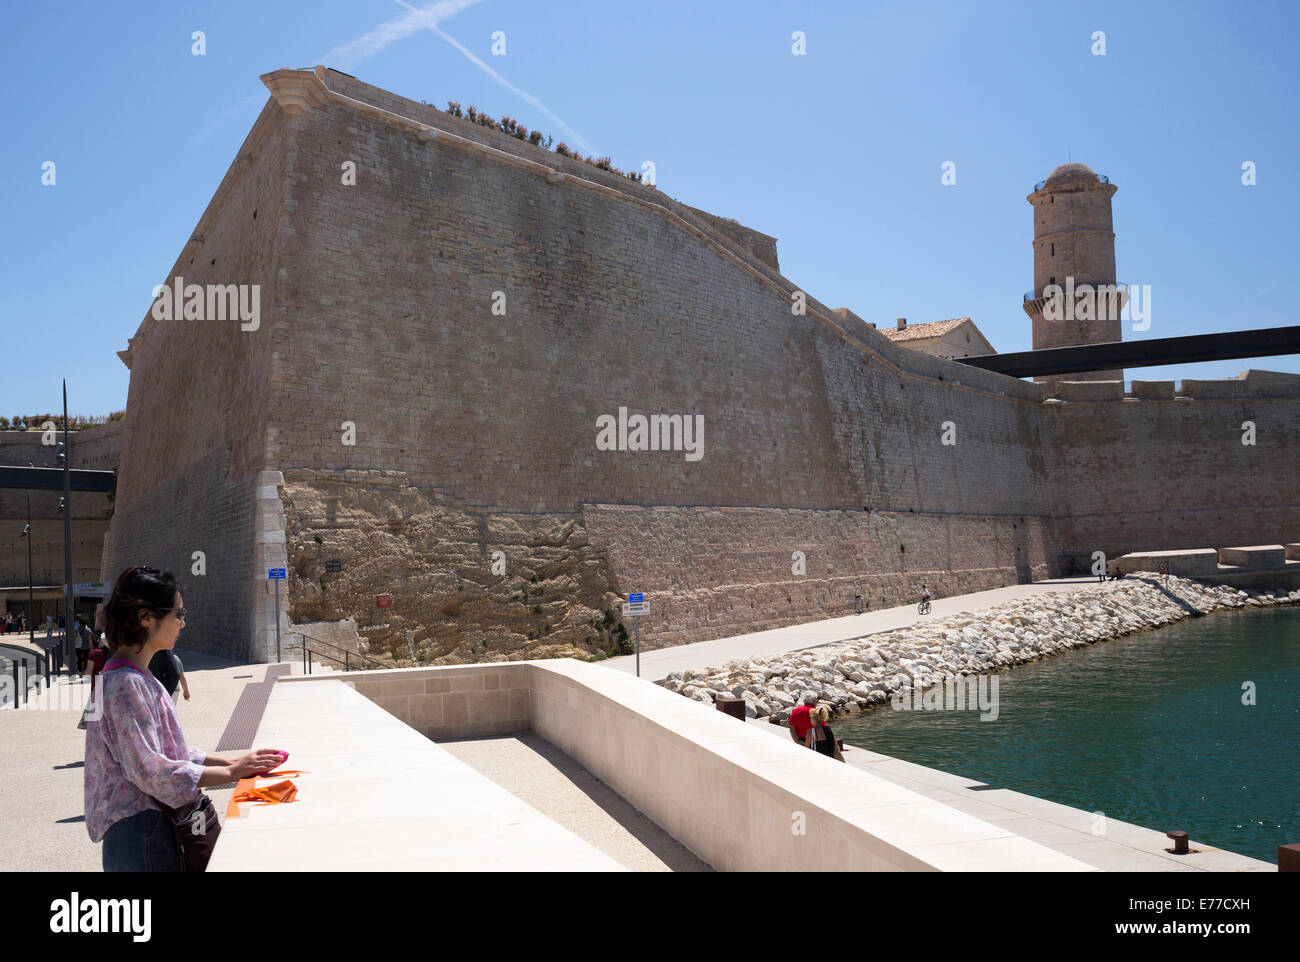 La antigua fortaleza militar St Jean custodiando el puerto de Marsella, Francia Foto de stock